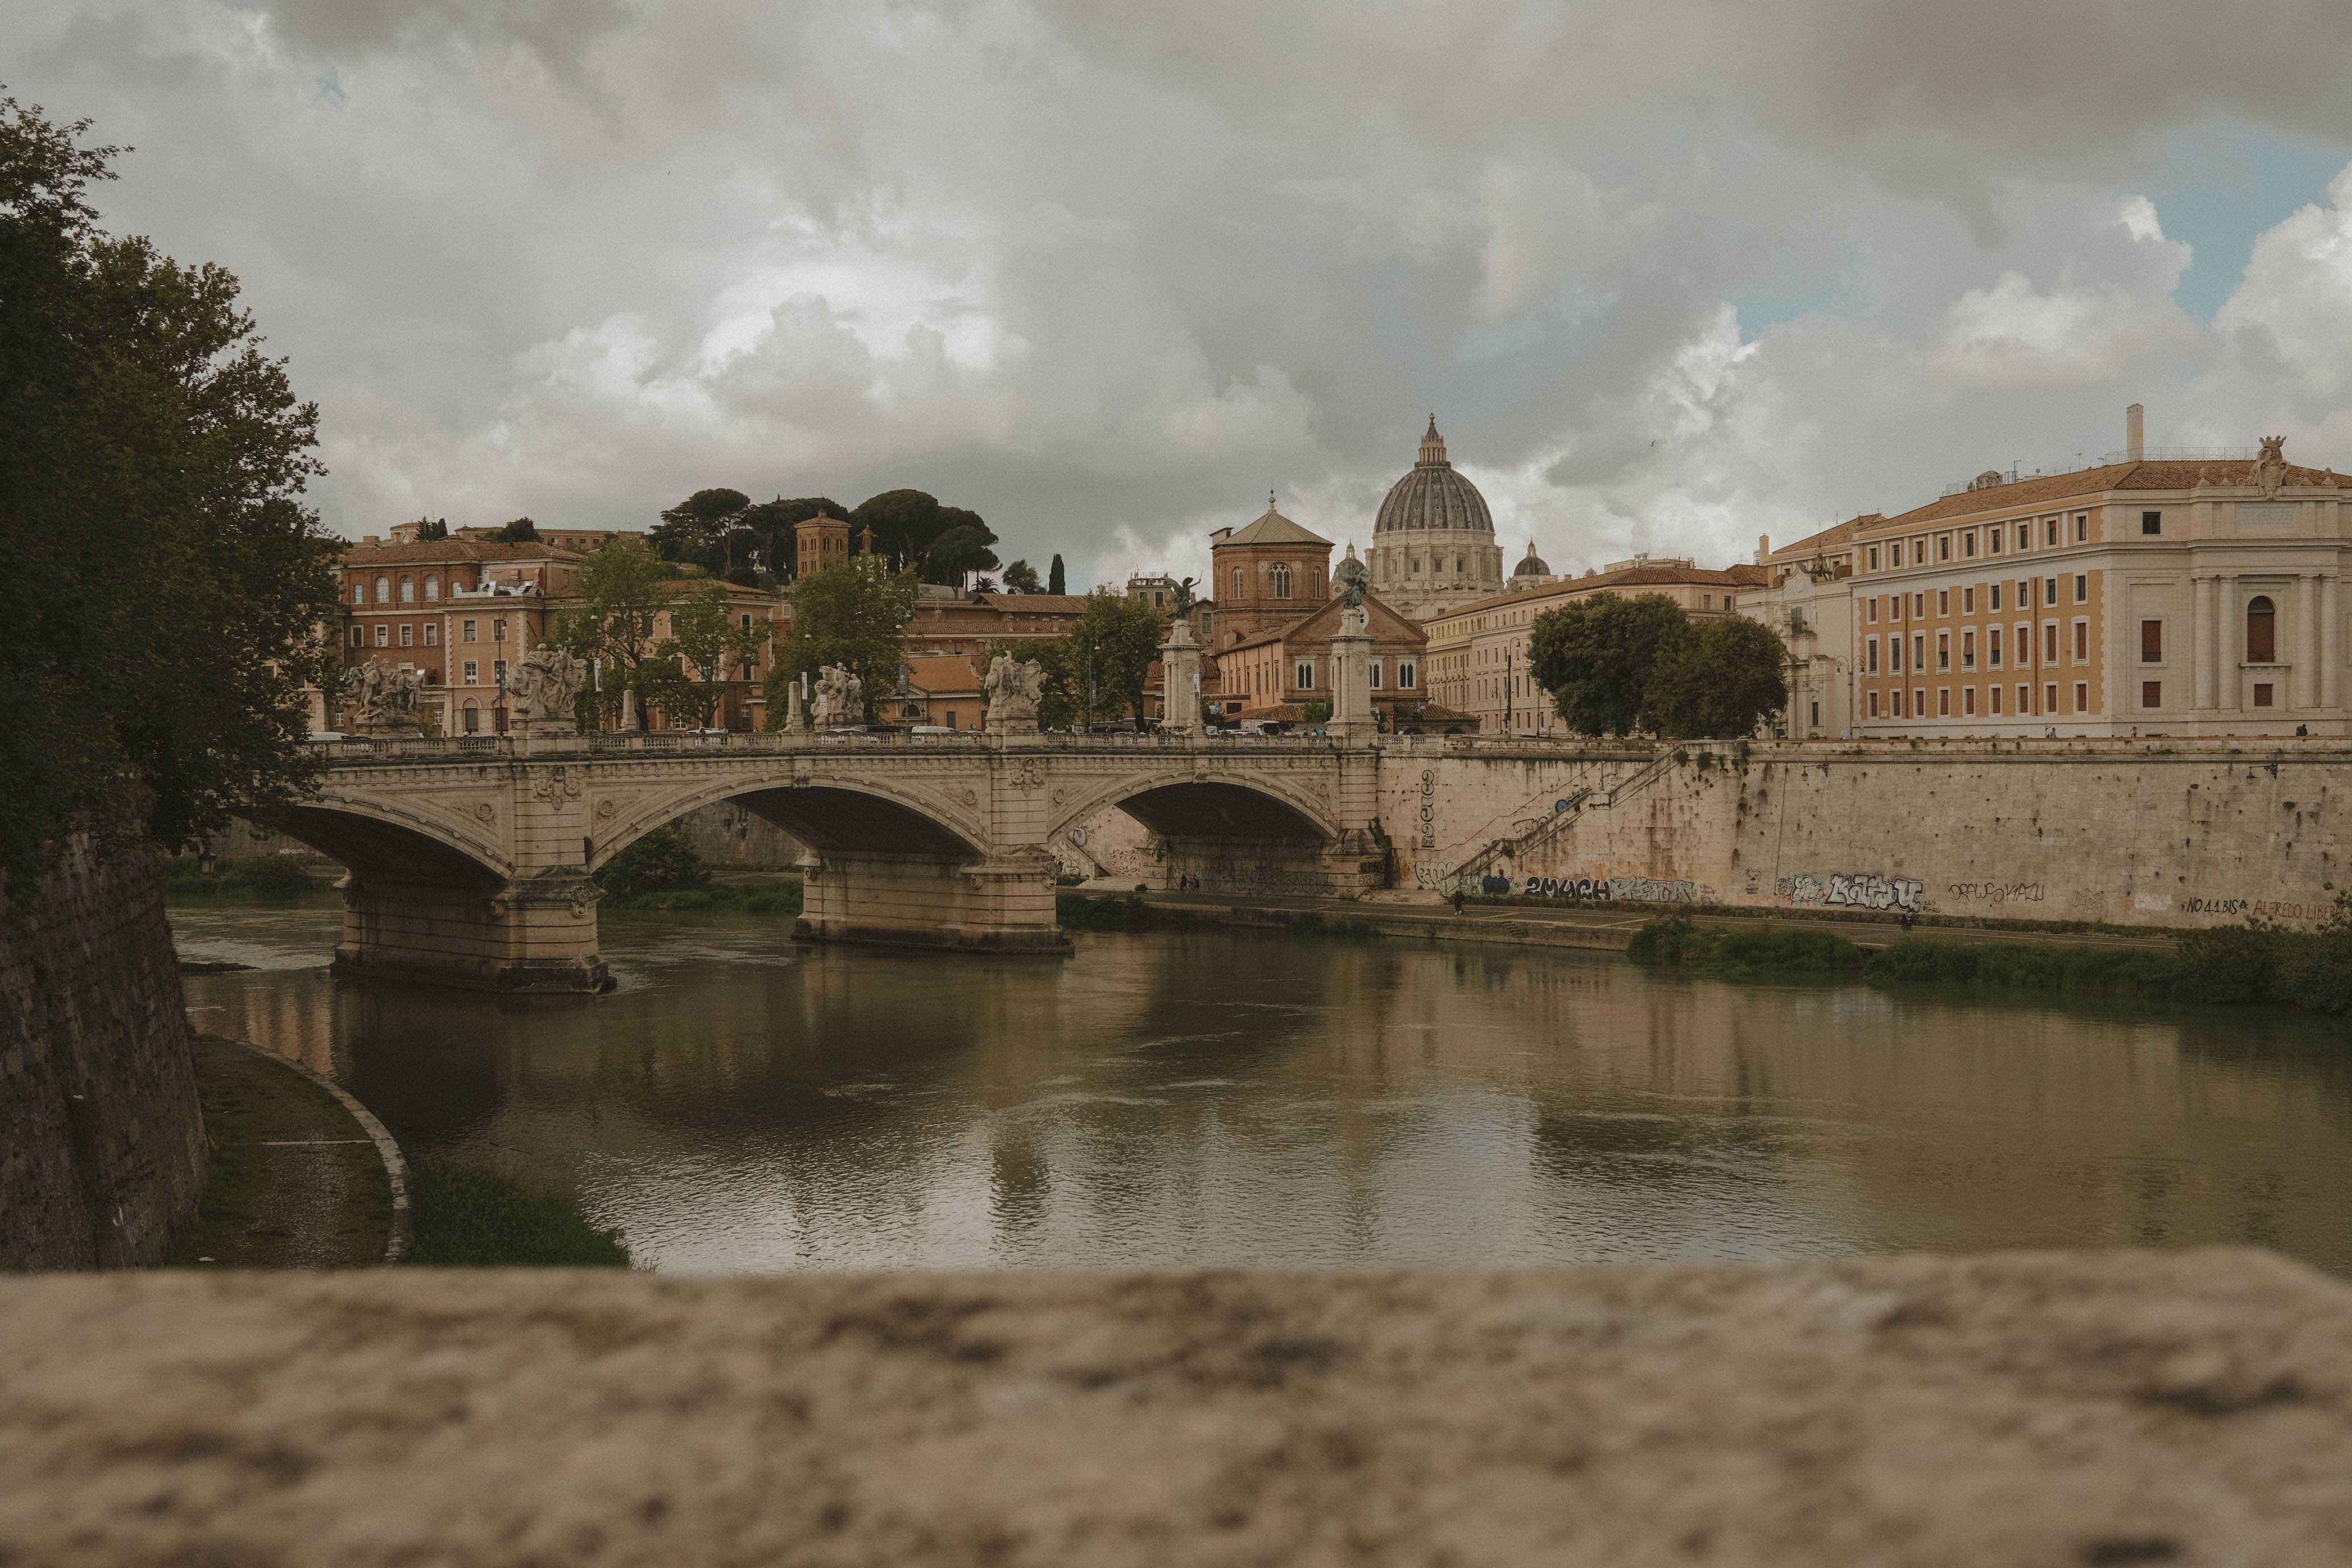 Facing Vatican City from a bridge